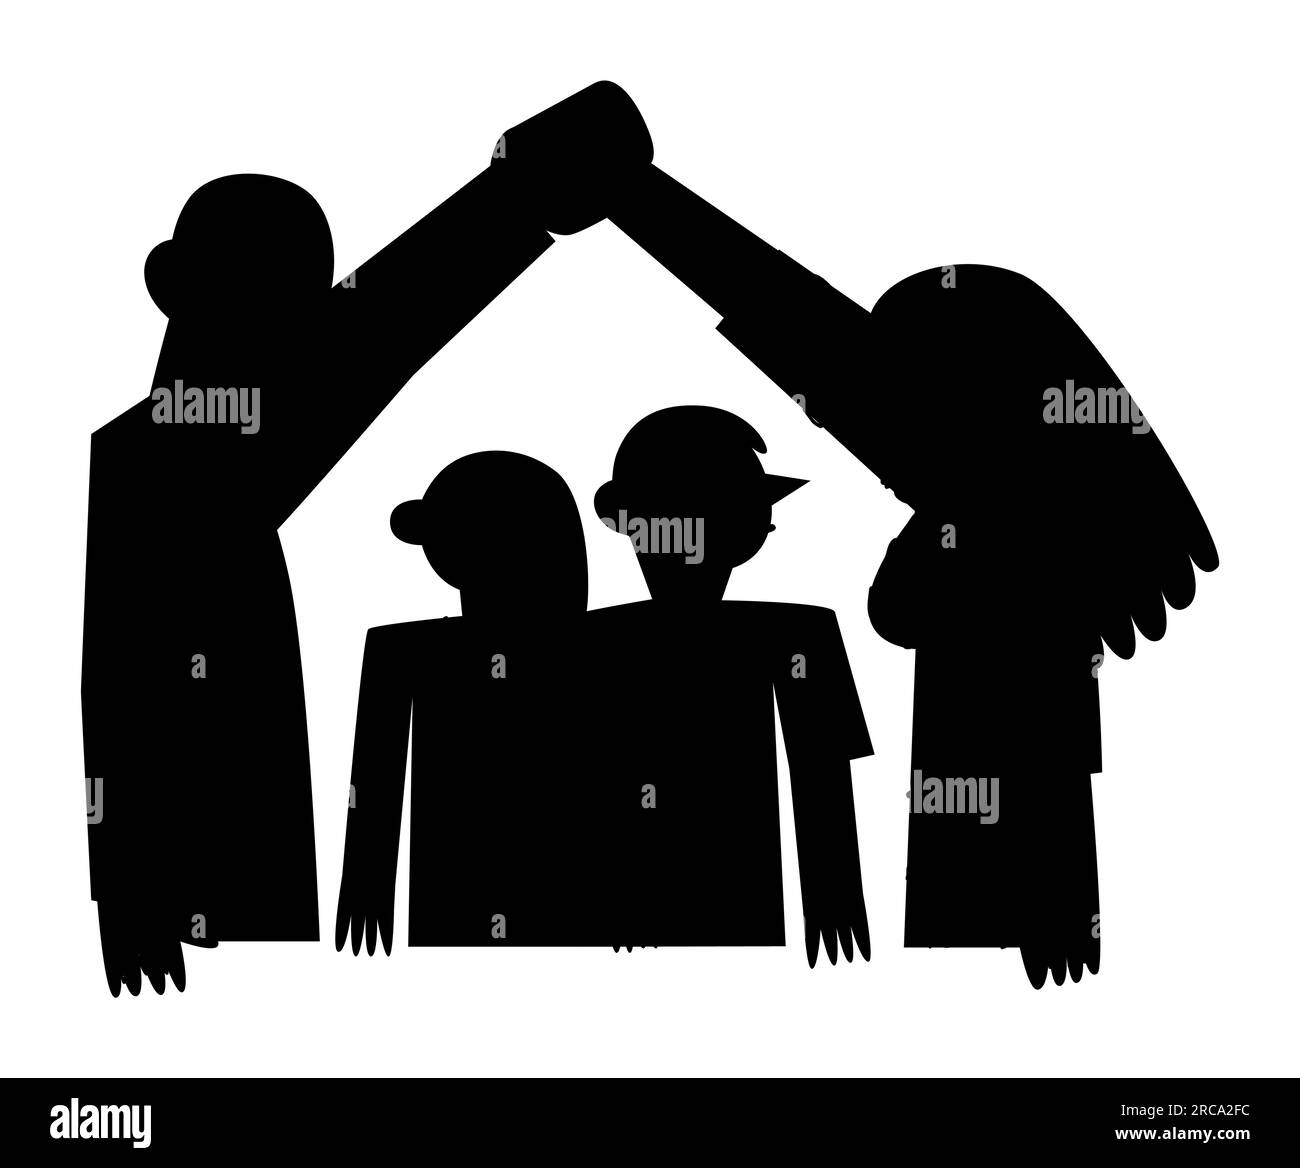 Eltern, die ein Heim-Symbol mit Händen machen, ein Heim, ein Heim, Familienliebe, Vektorbild isoliert auf weißem Hintergrund, Silhouette Stock Vektor